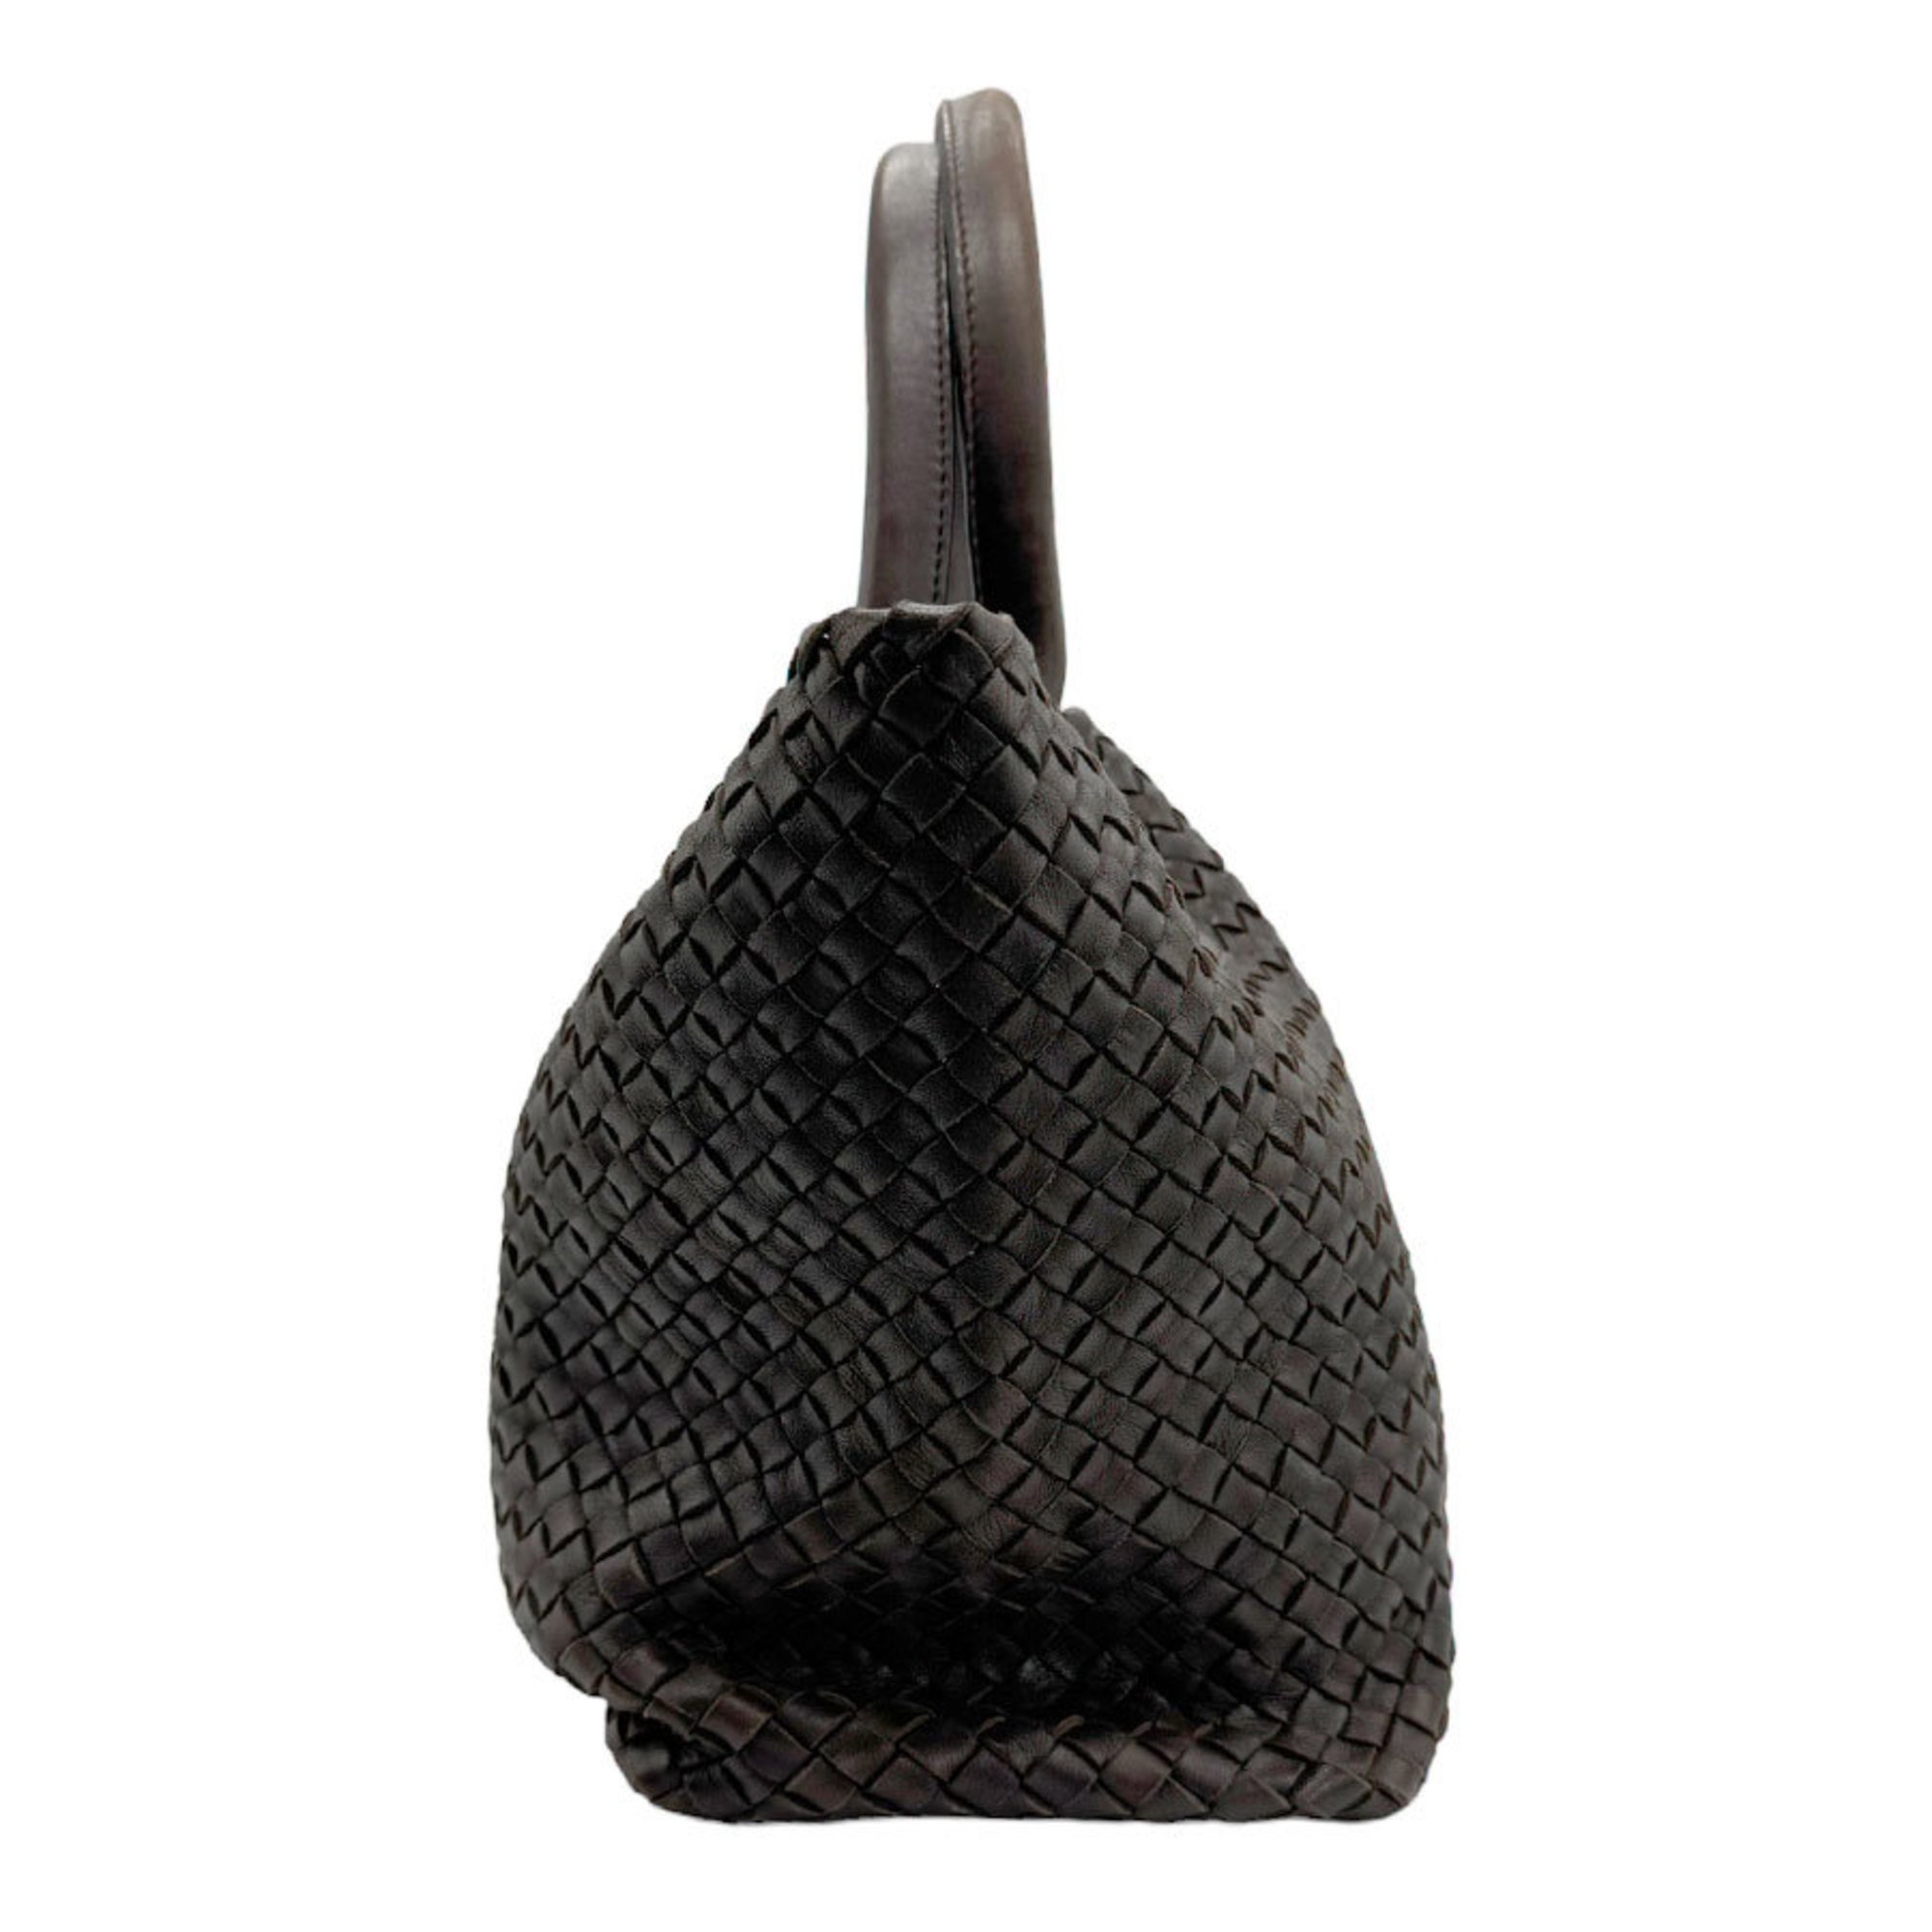 BOTTEGA VENETA Handbag Intrecciato Leather Dark Brown Men's Women's z1059